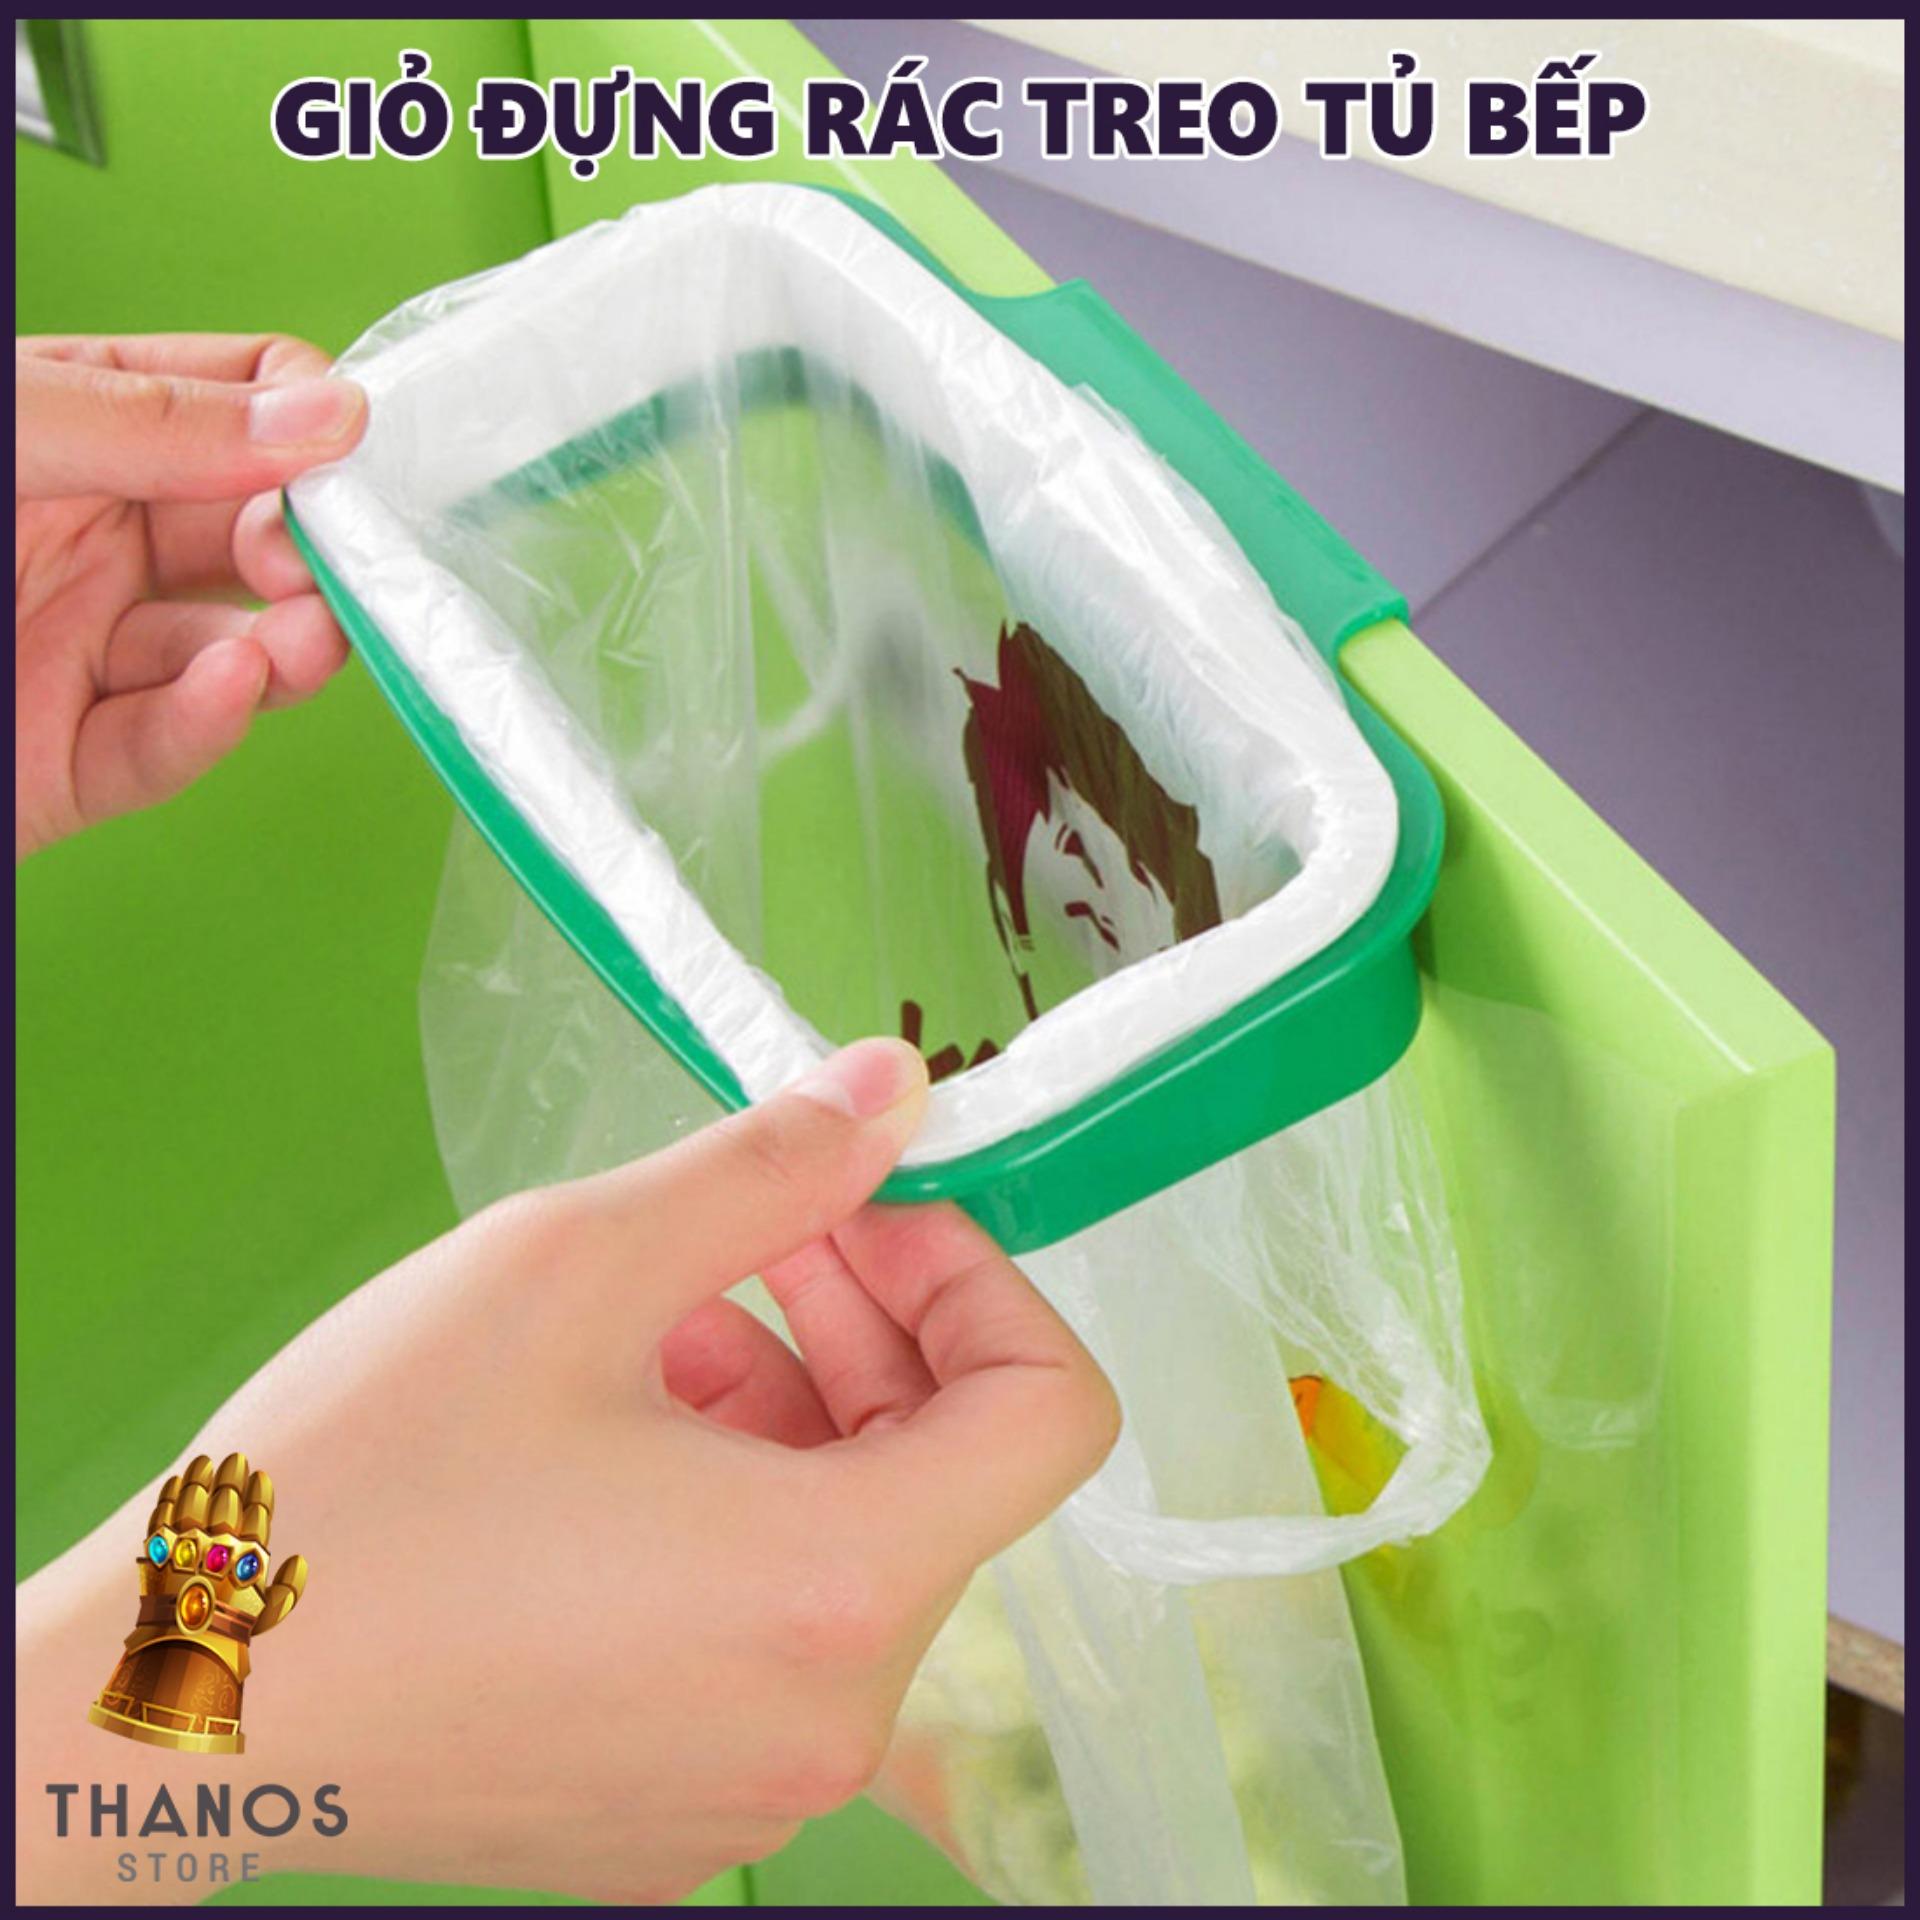 Giỏ đựng rác treo tủ bếp - Thanos Store